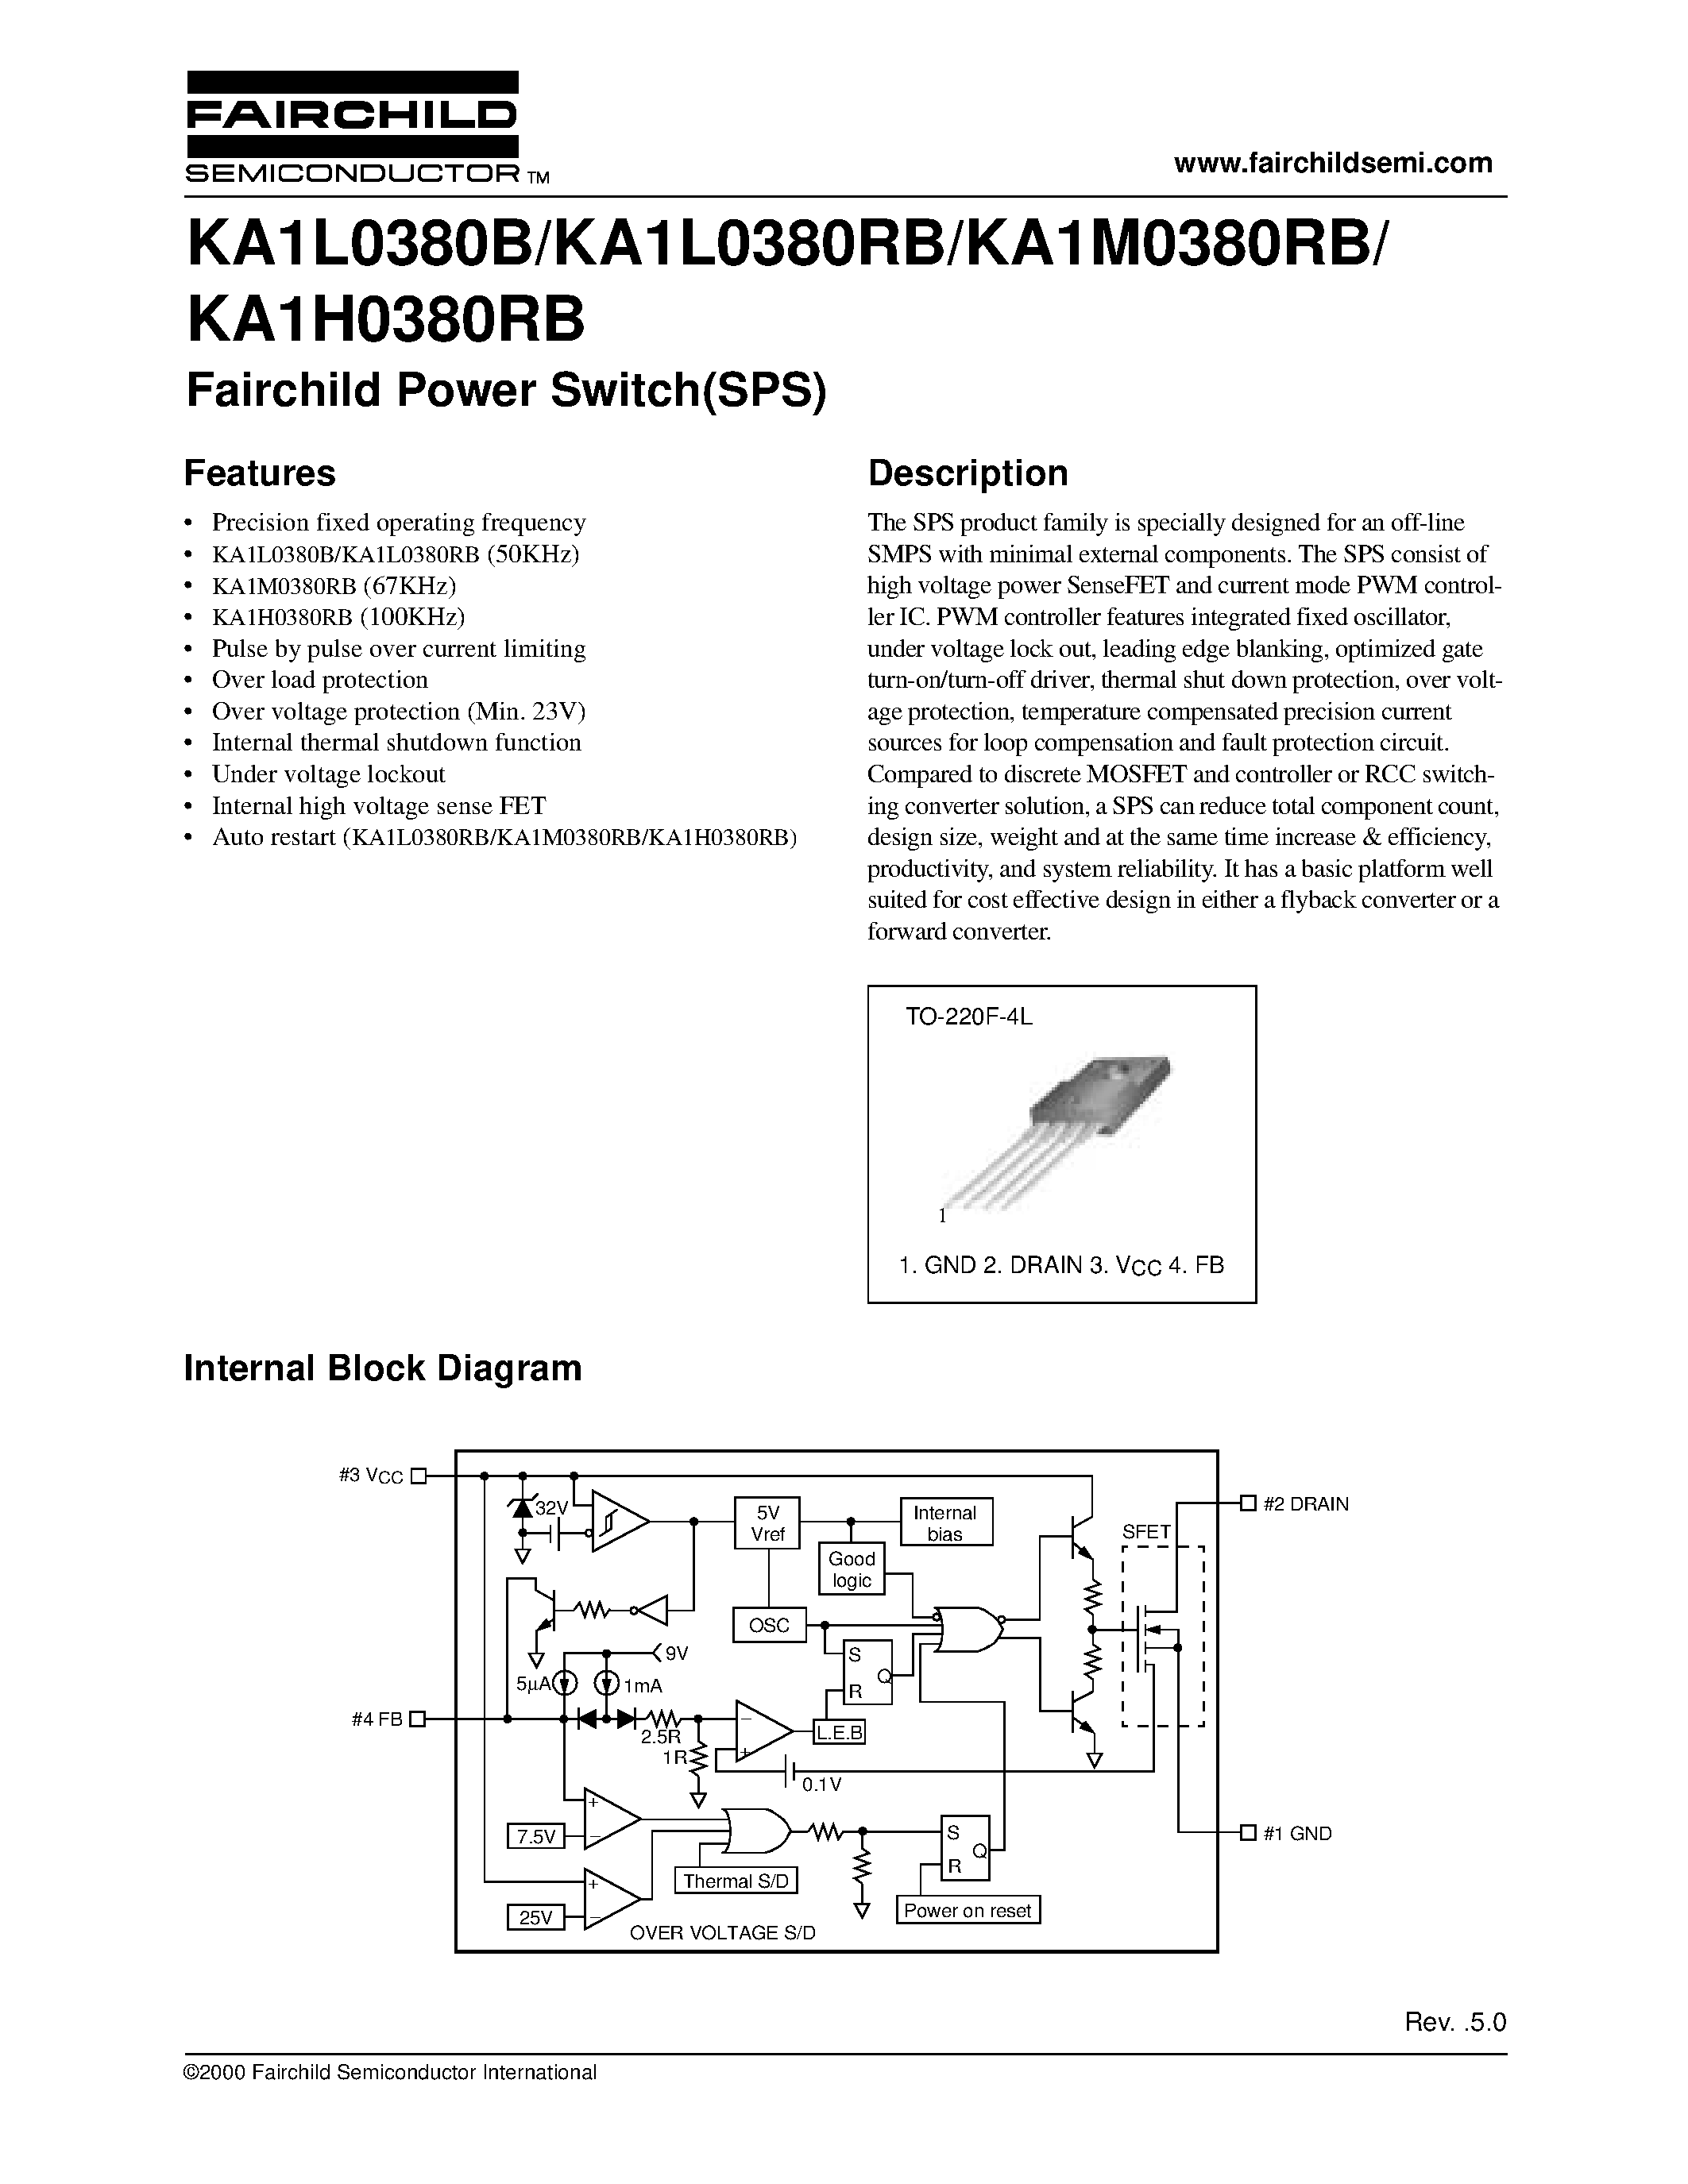 Даташит KA1L0380RB-YDTU - Fairchild Power Switch(SPS) страница 1